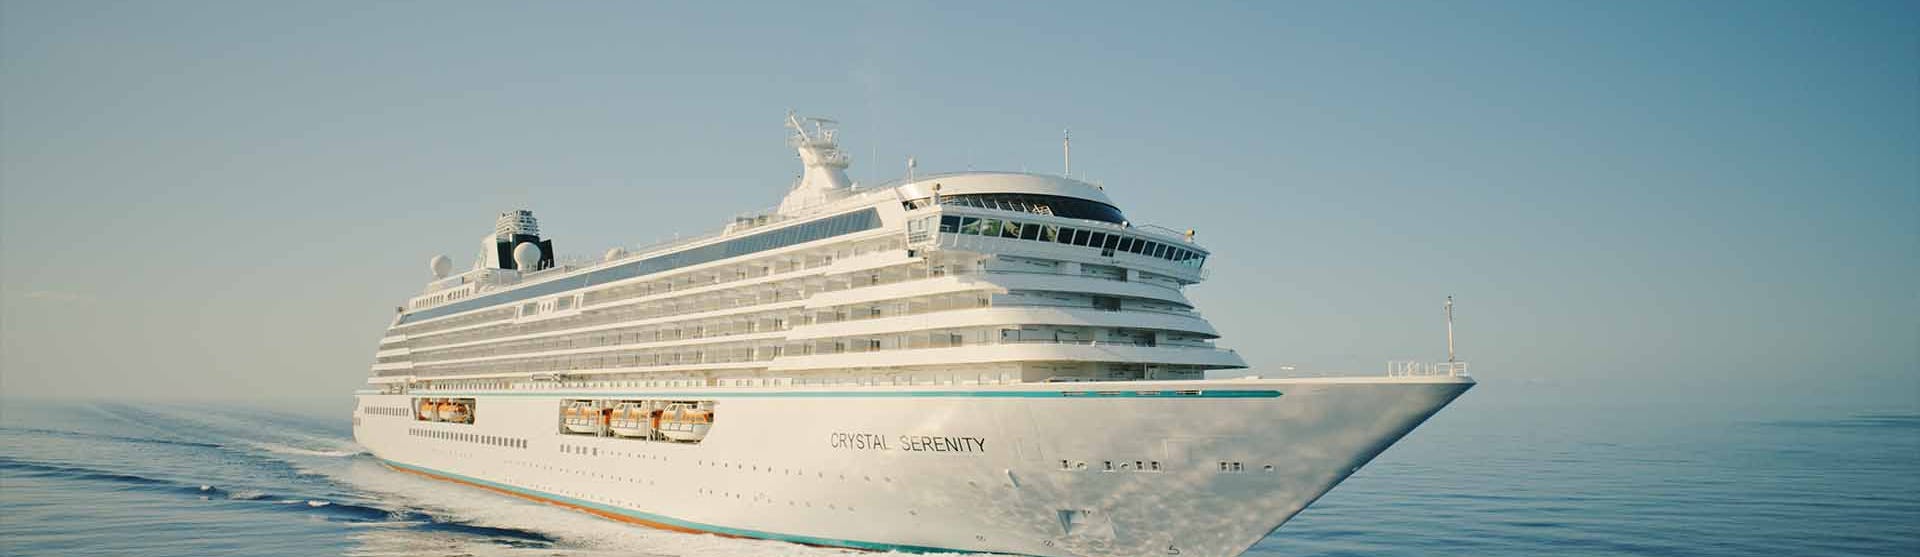 Crystal Serenity Cruise Ship Crystal Cruises